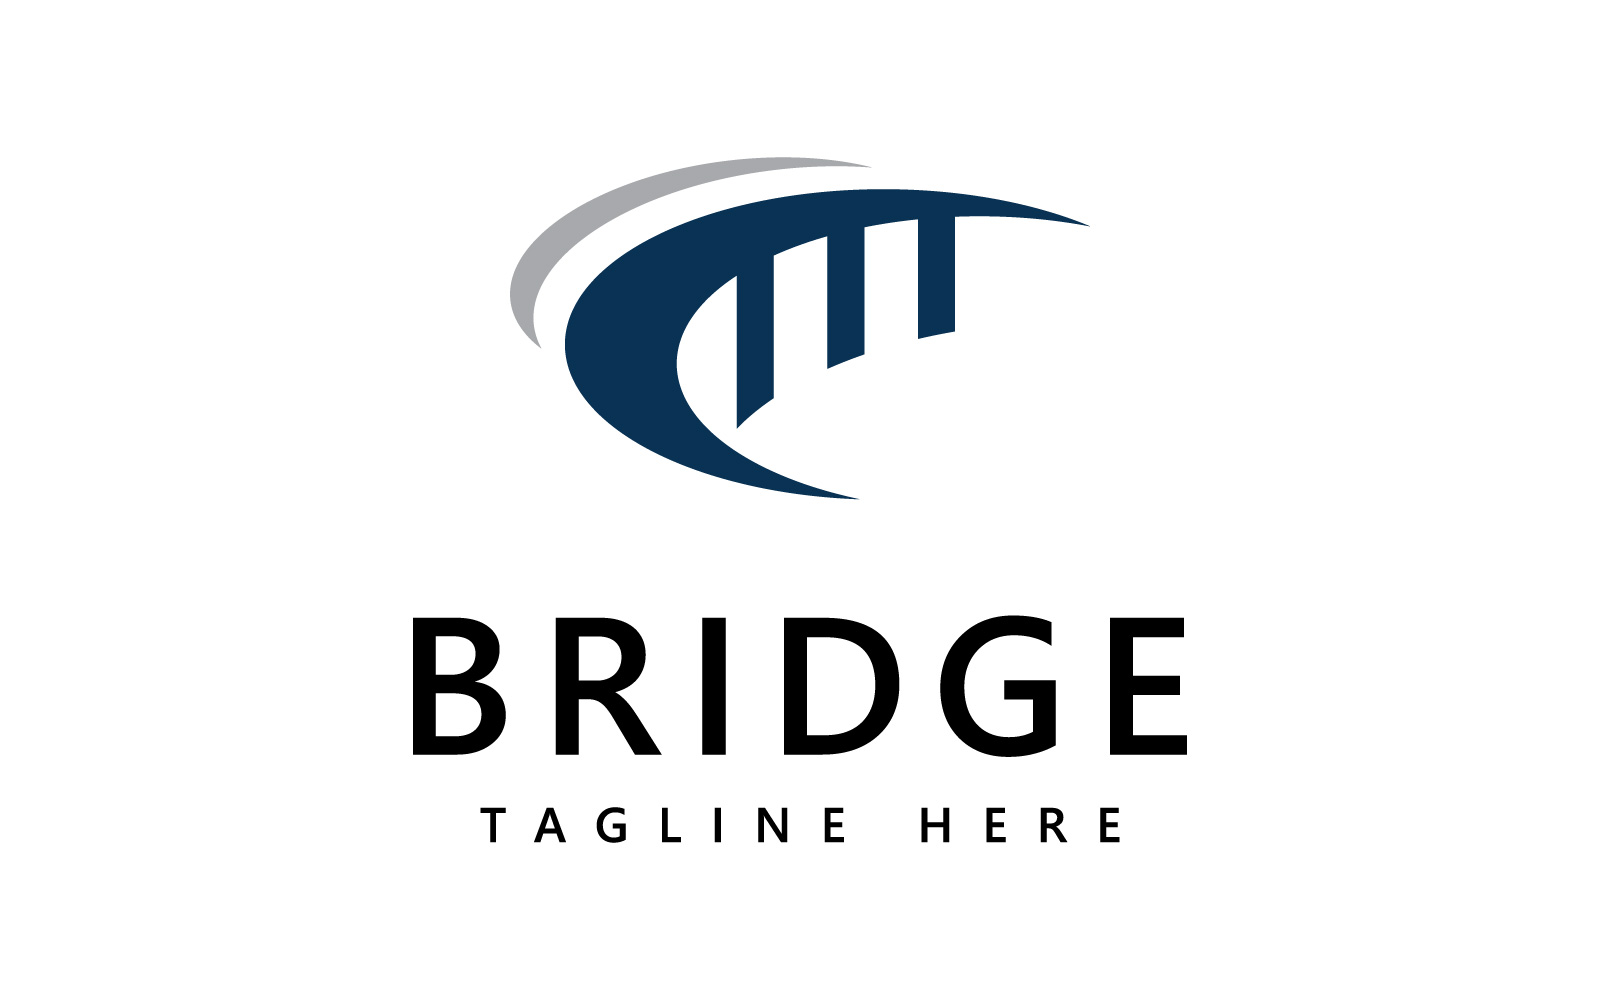 Bridge logo icon design template V2